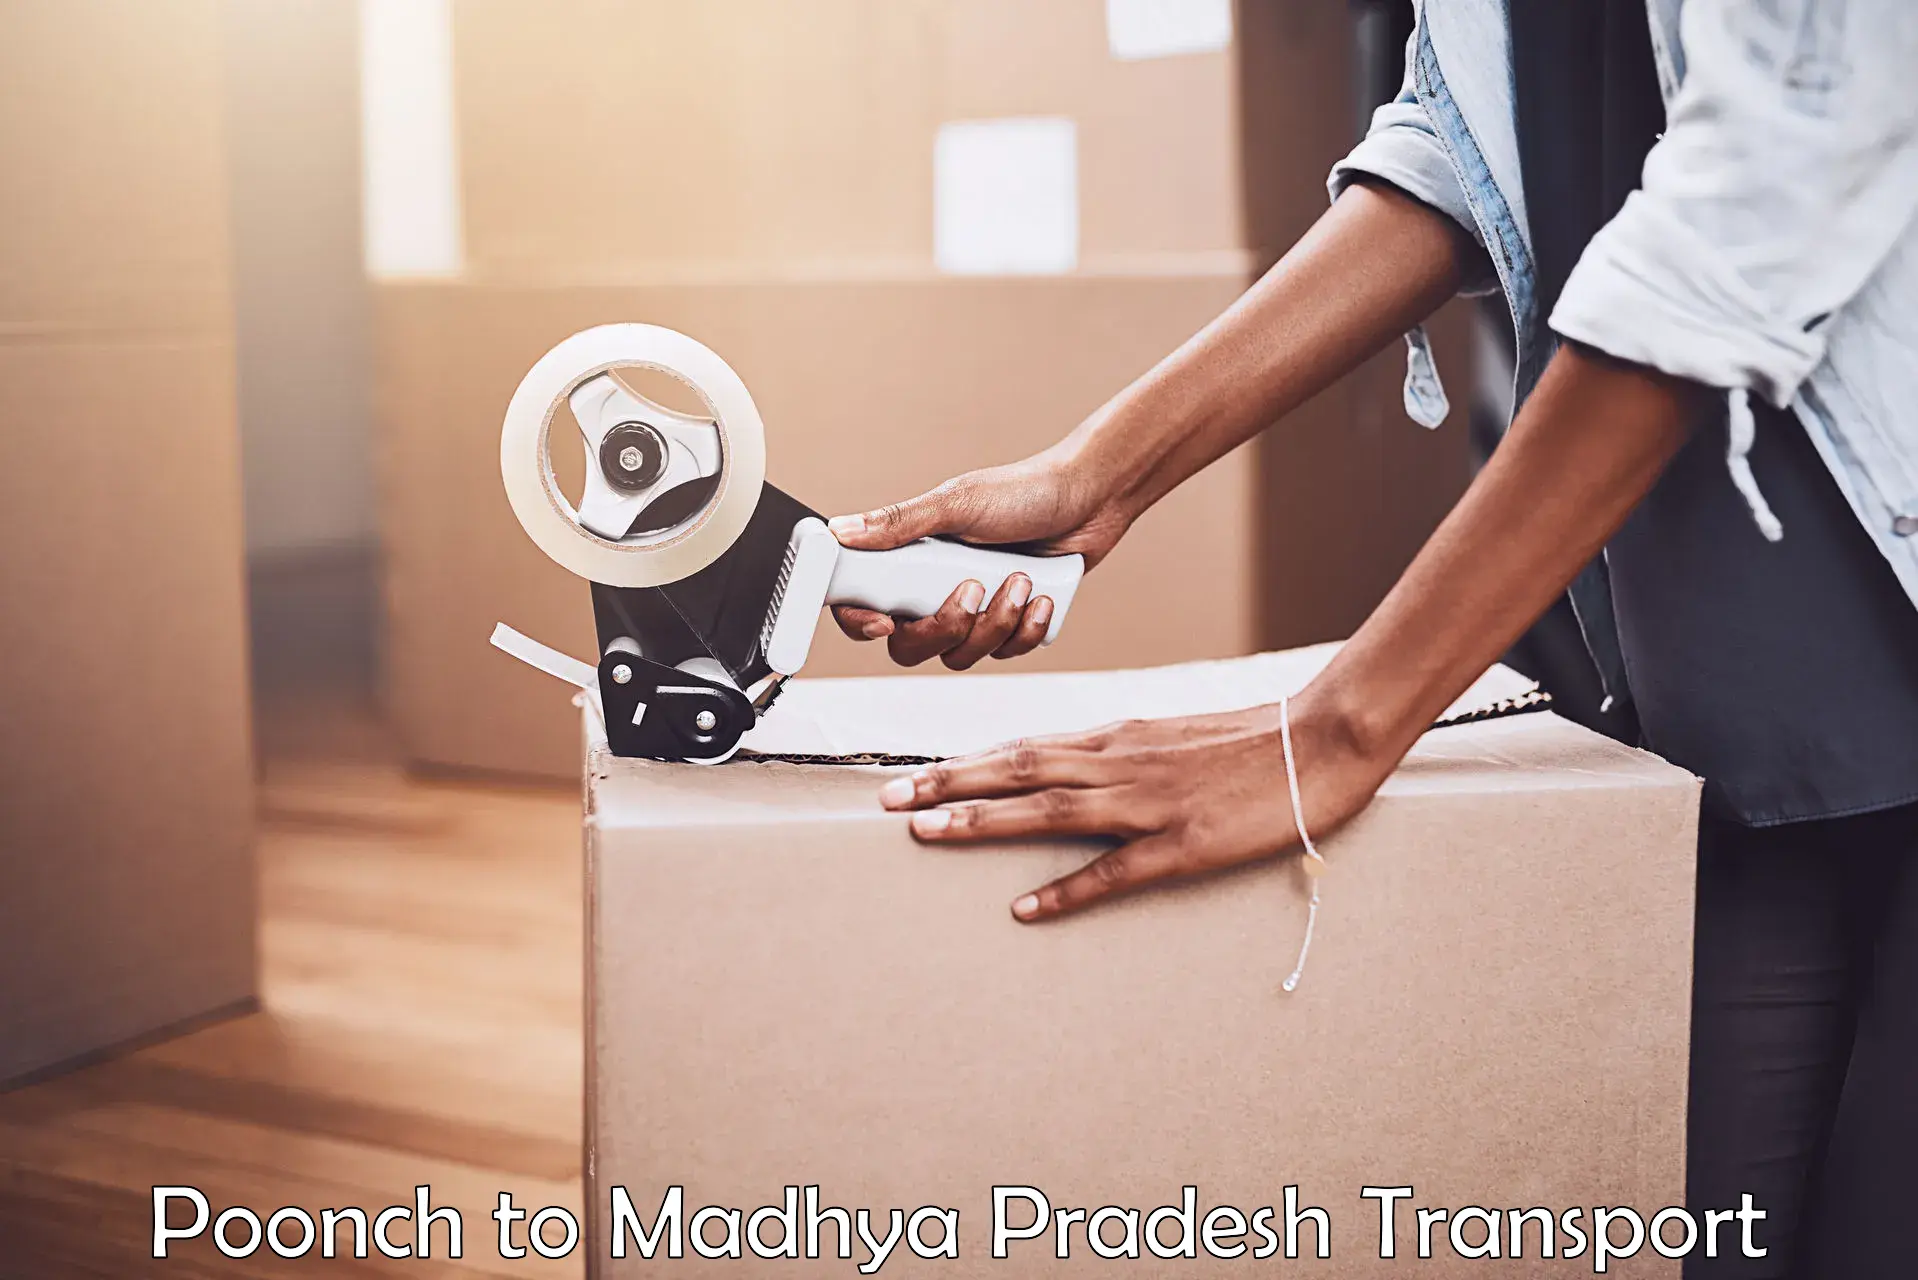 Delivery service Poonch to Gadarwara